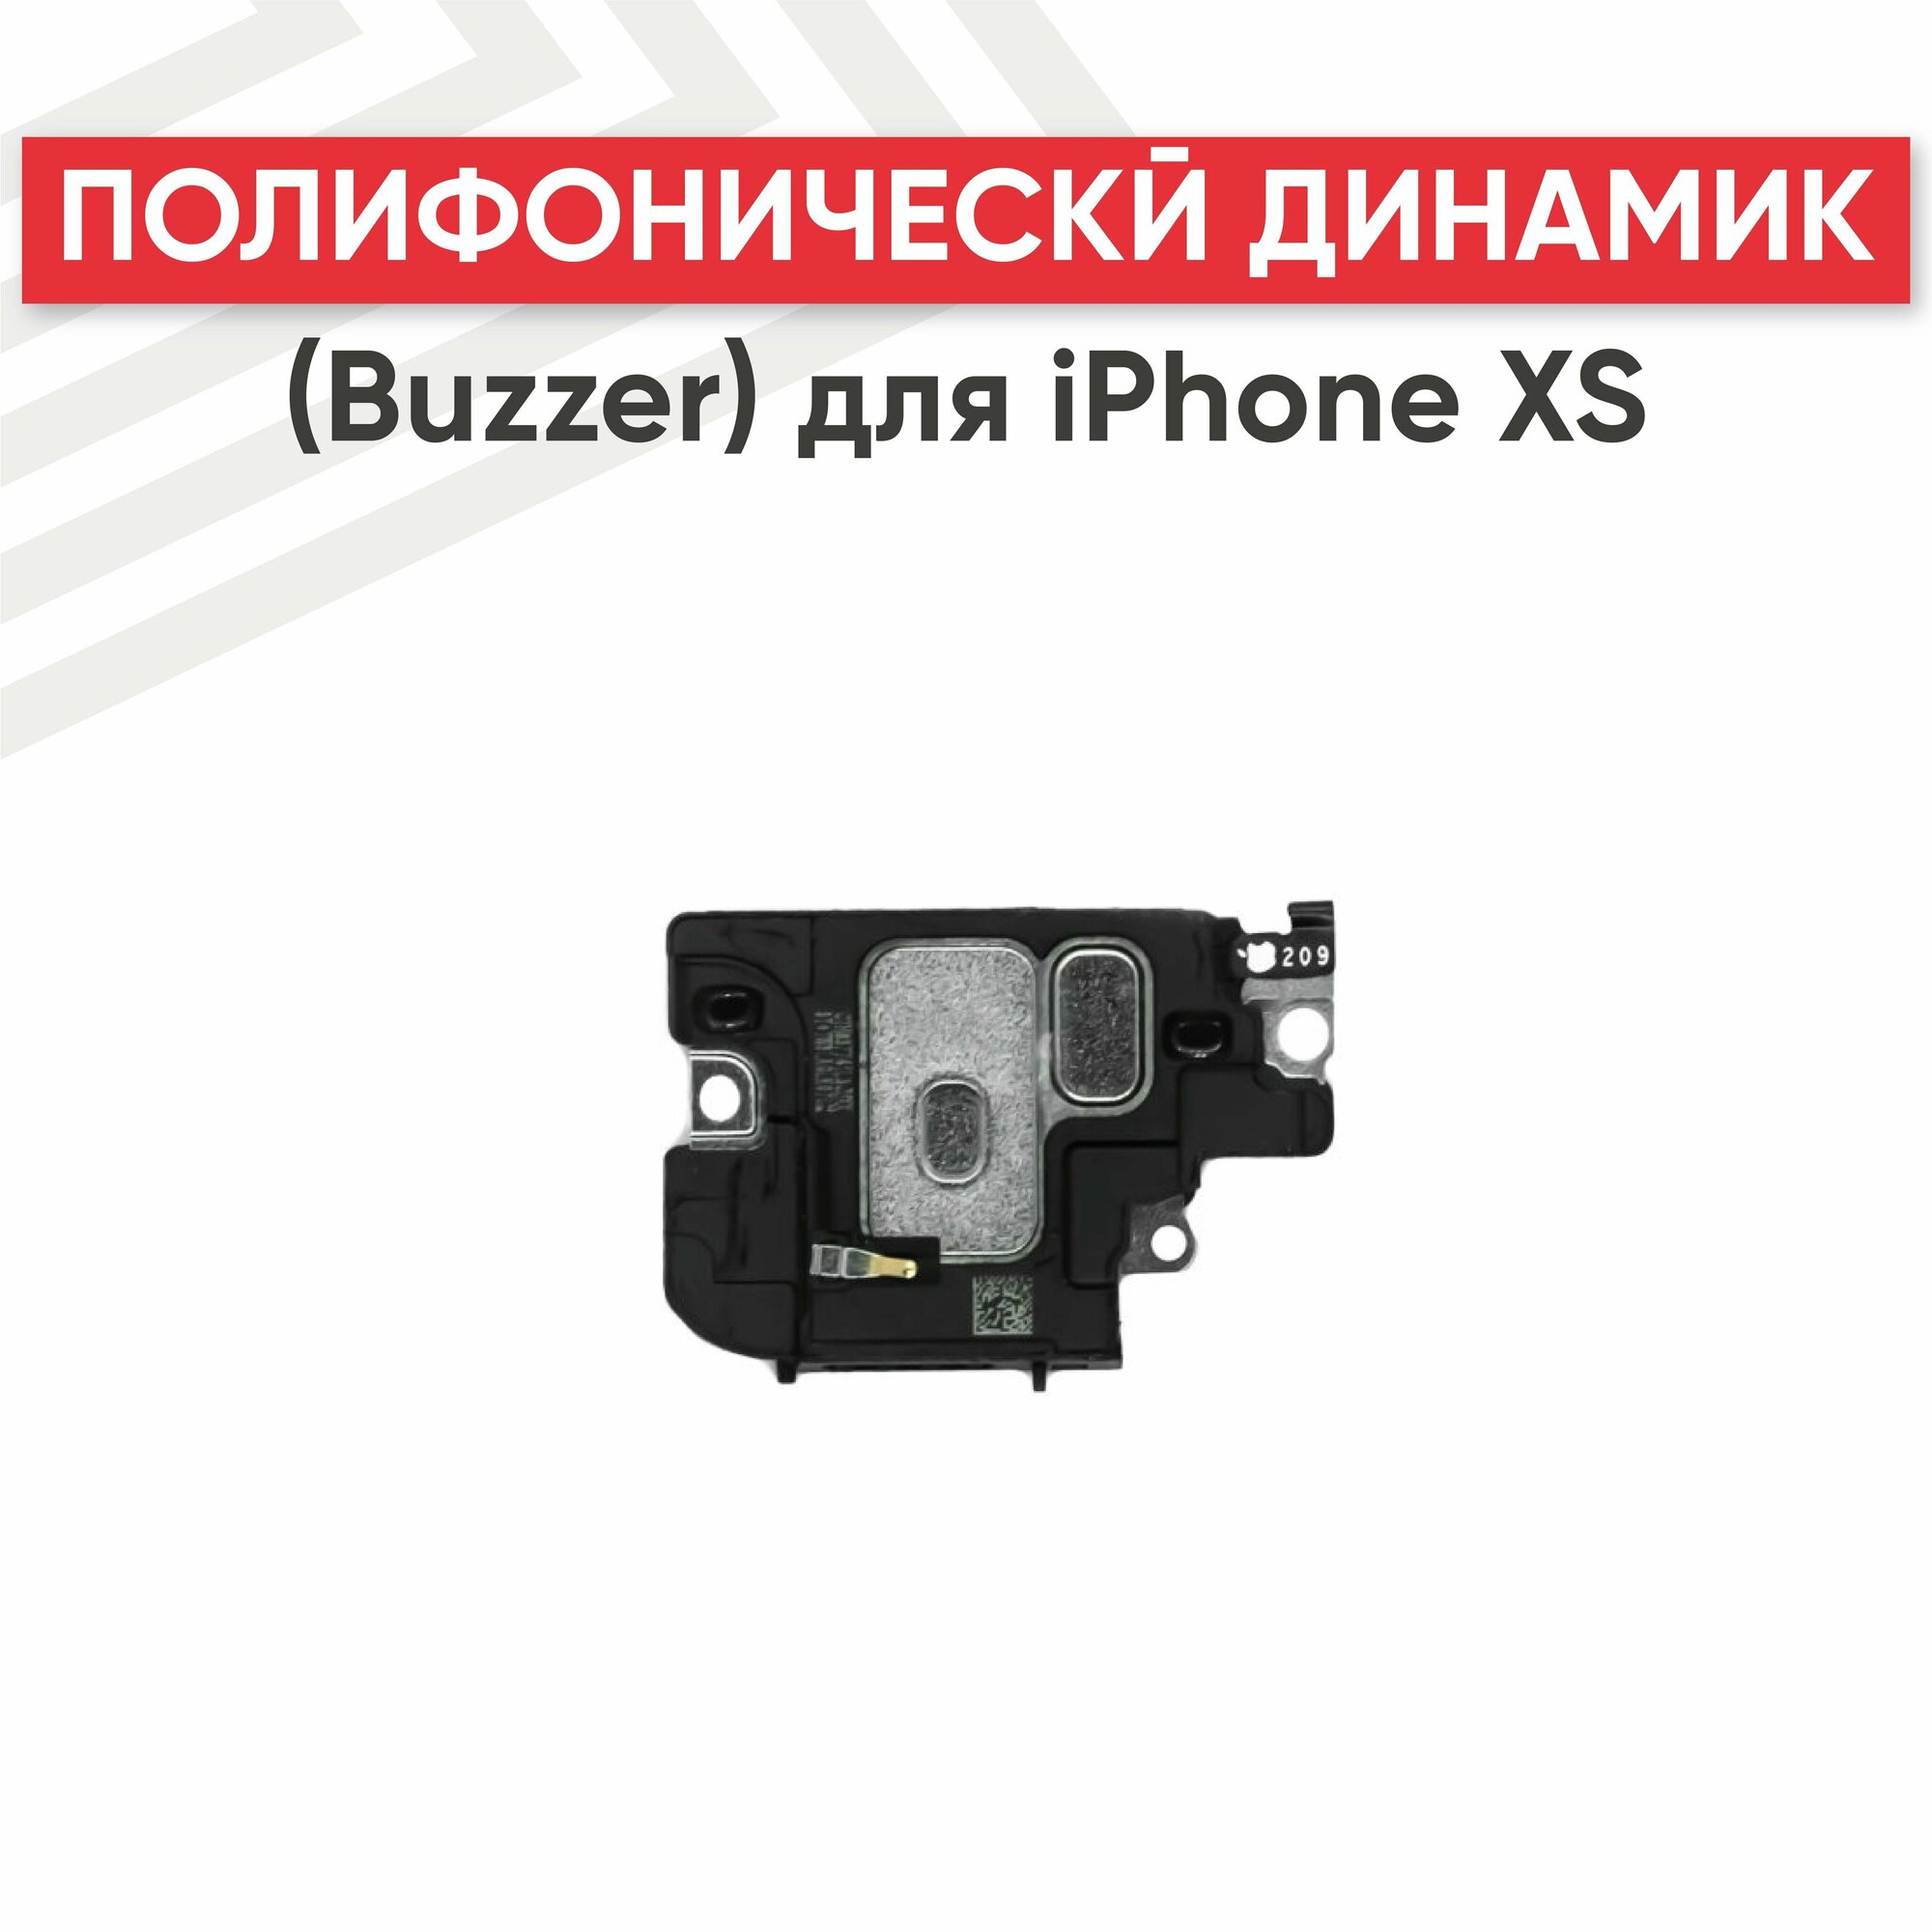 Полифонический динамик (Buzzer) RageX для iPhone XS